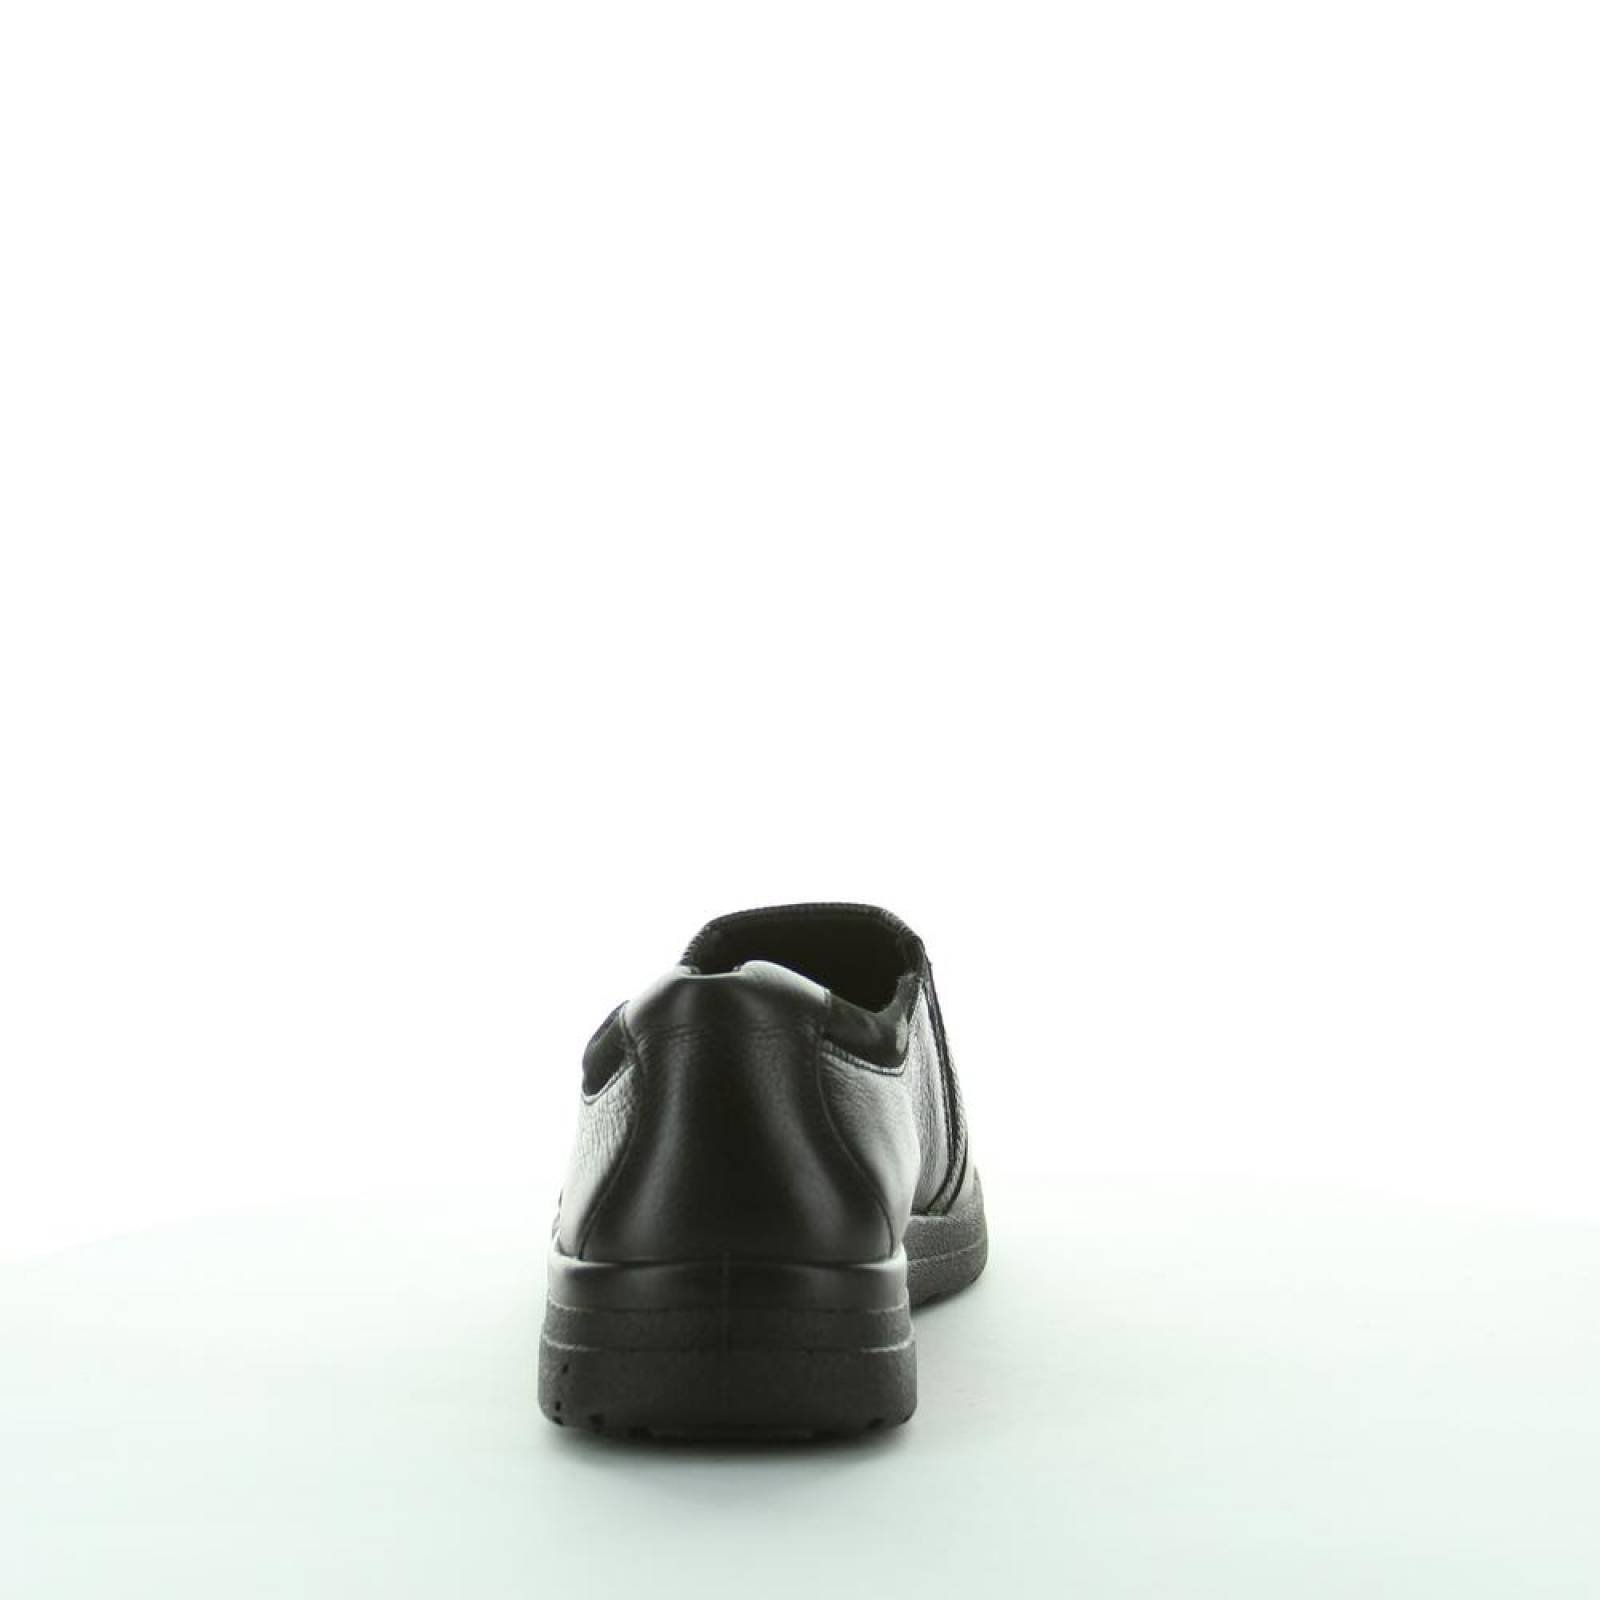 Zapato Confort Mujer Flexi Negro 02503121 Piel 